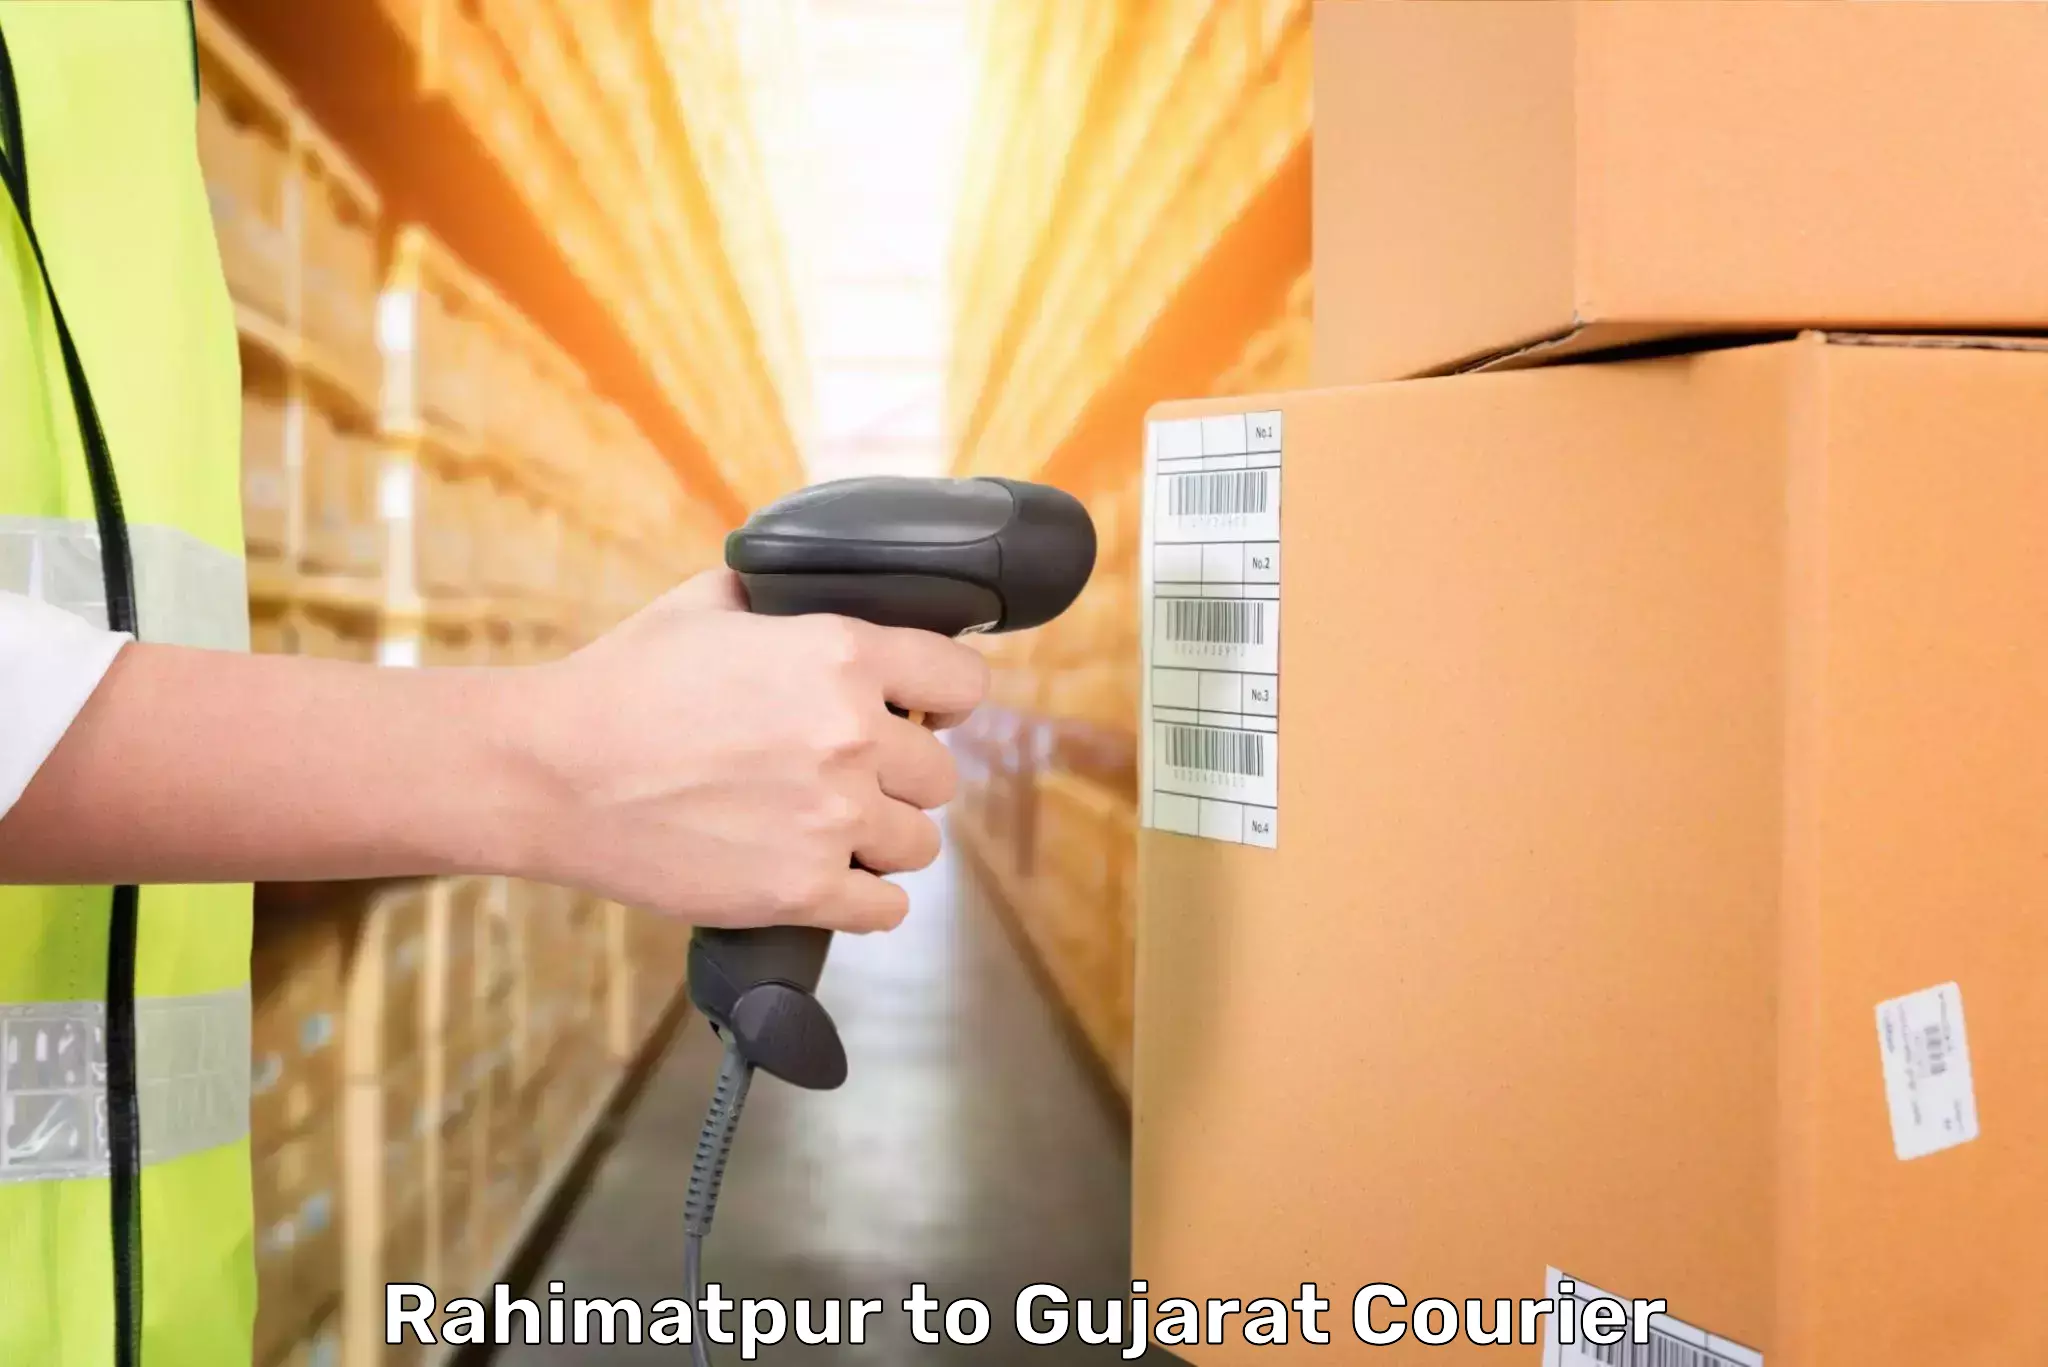 Door-to-door baggage service Rahimatpur to Gujarat